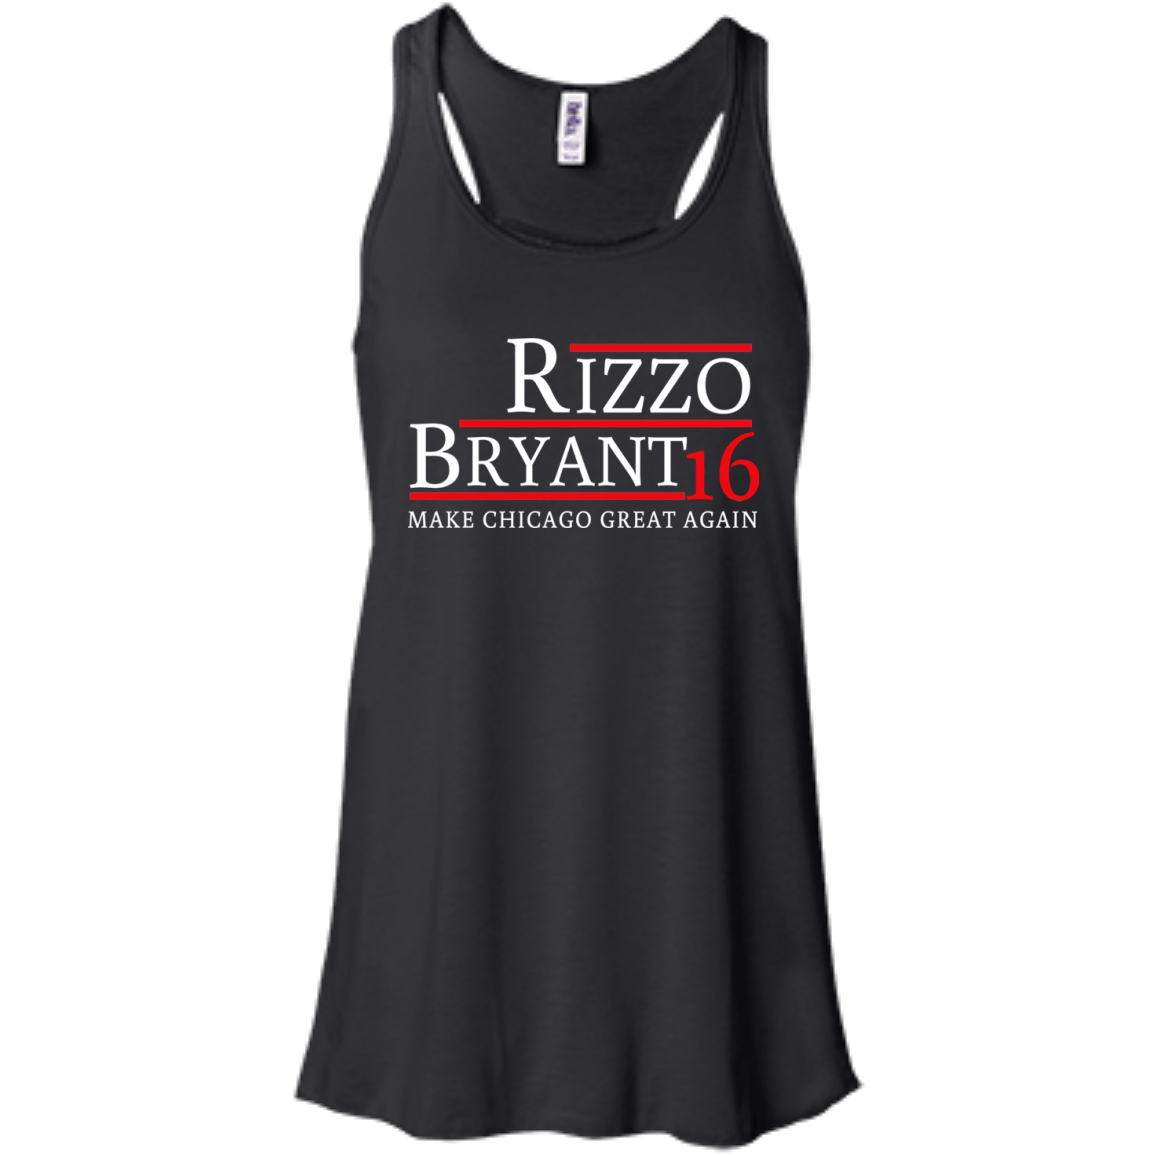 rizzo bryant 2016 shirt